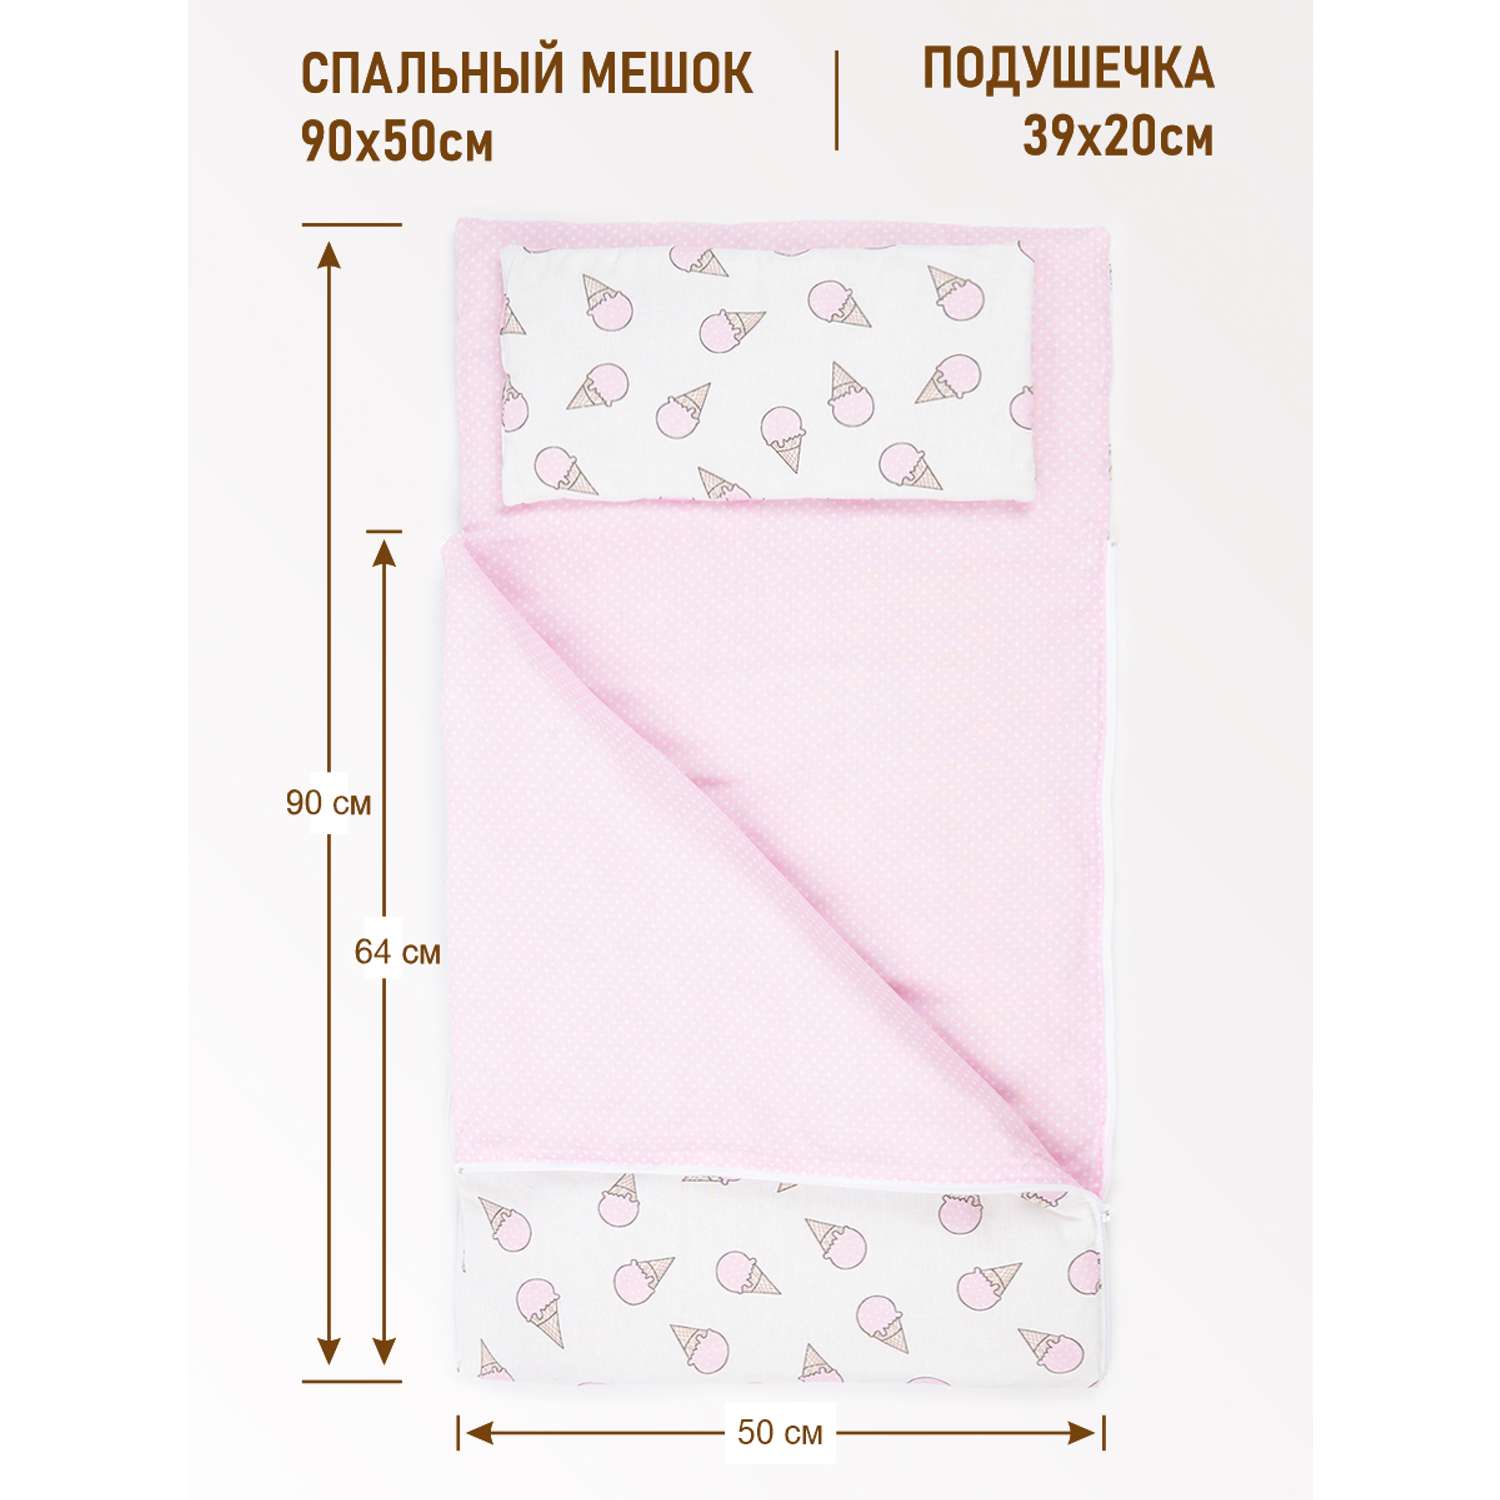 Спальный мешок Чудо-чадо Сплюшик мороженое розовый - фото 2